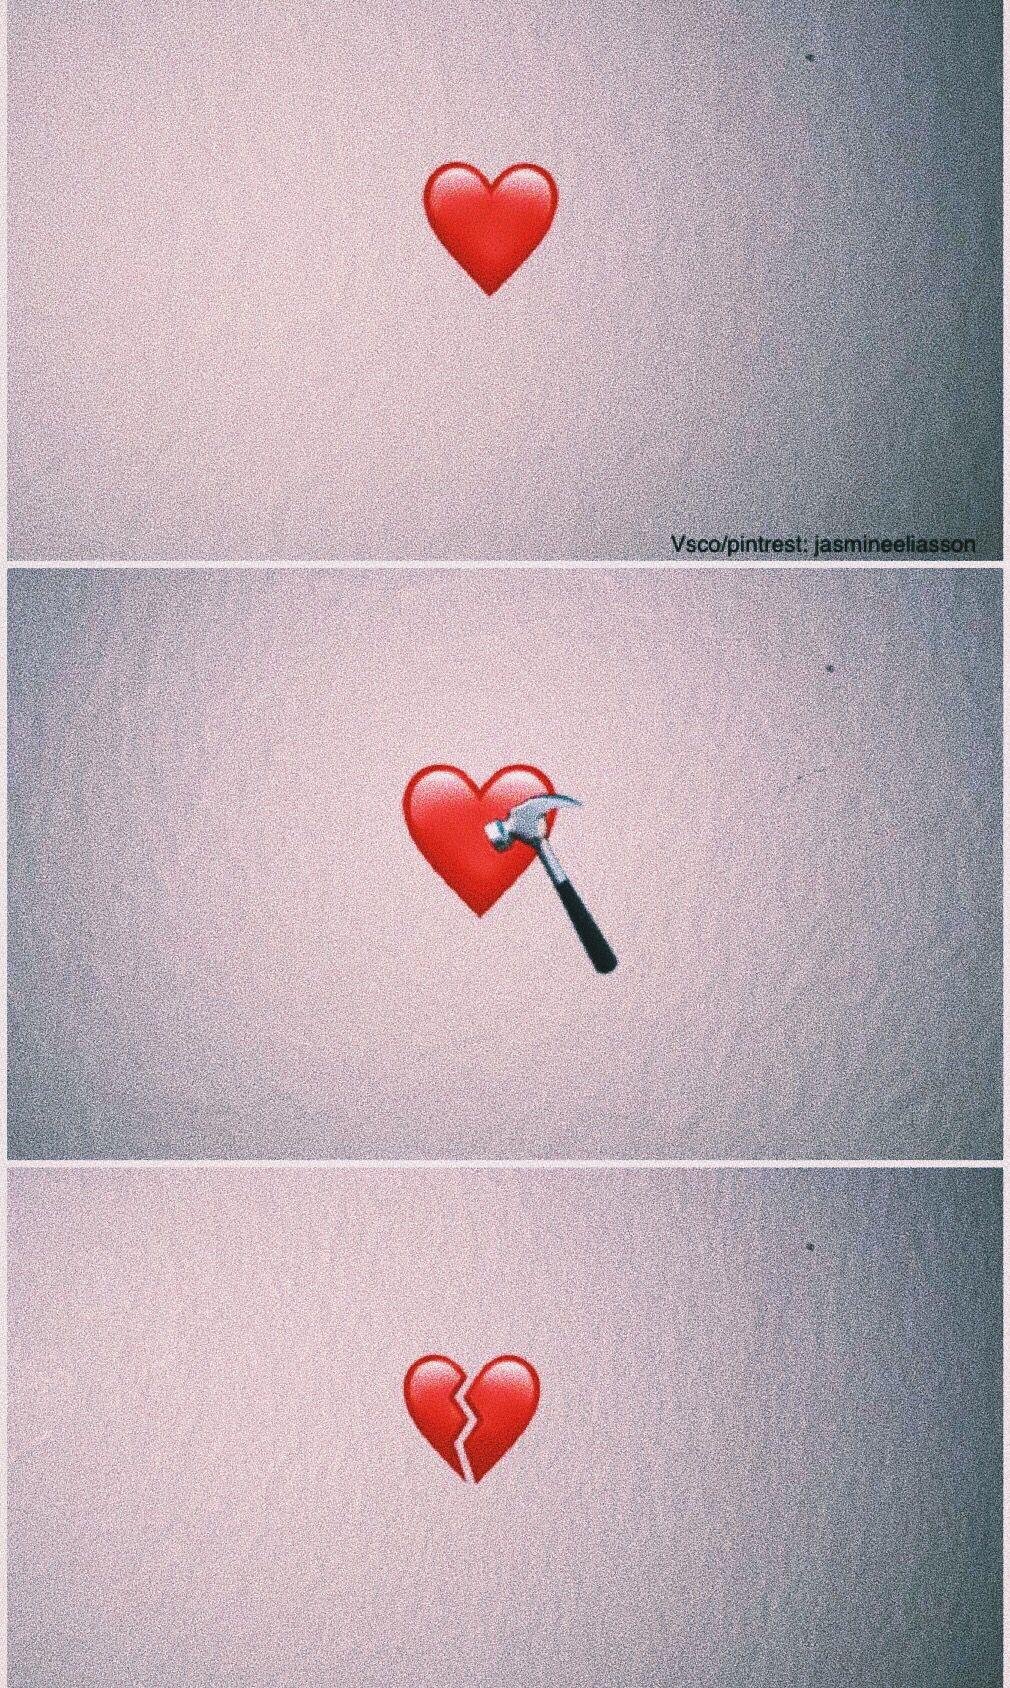 100+] Broken Heart Iphone Wallpapers | Wallpapers.com